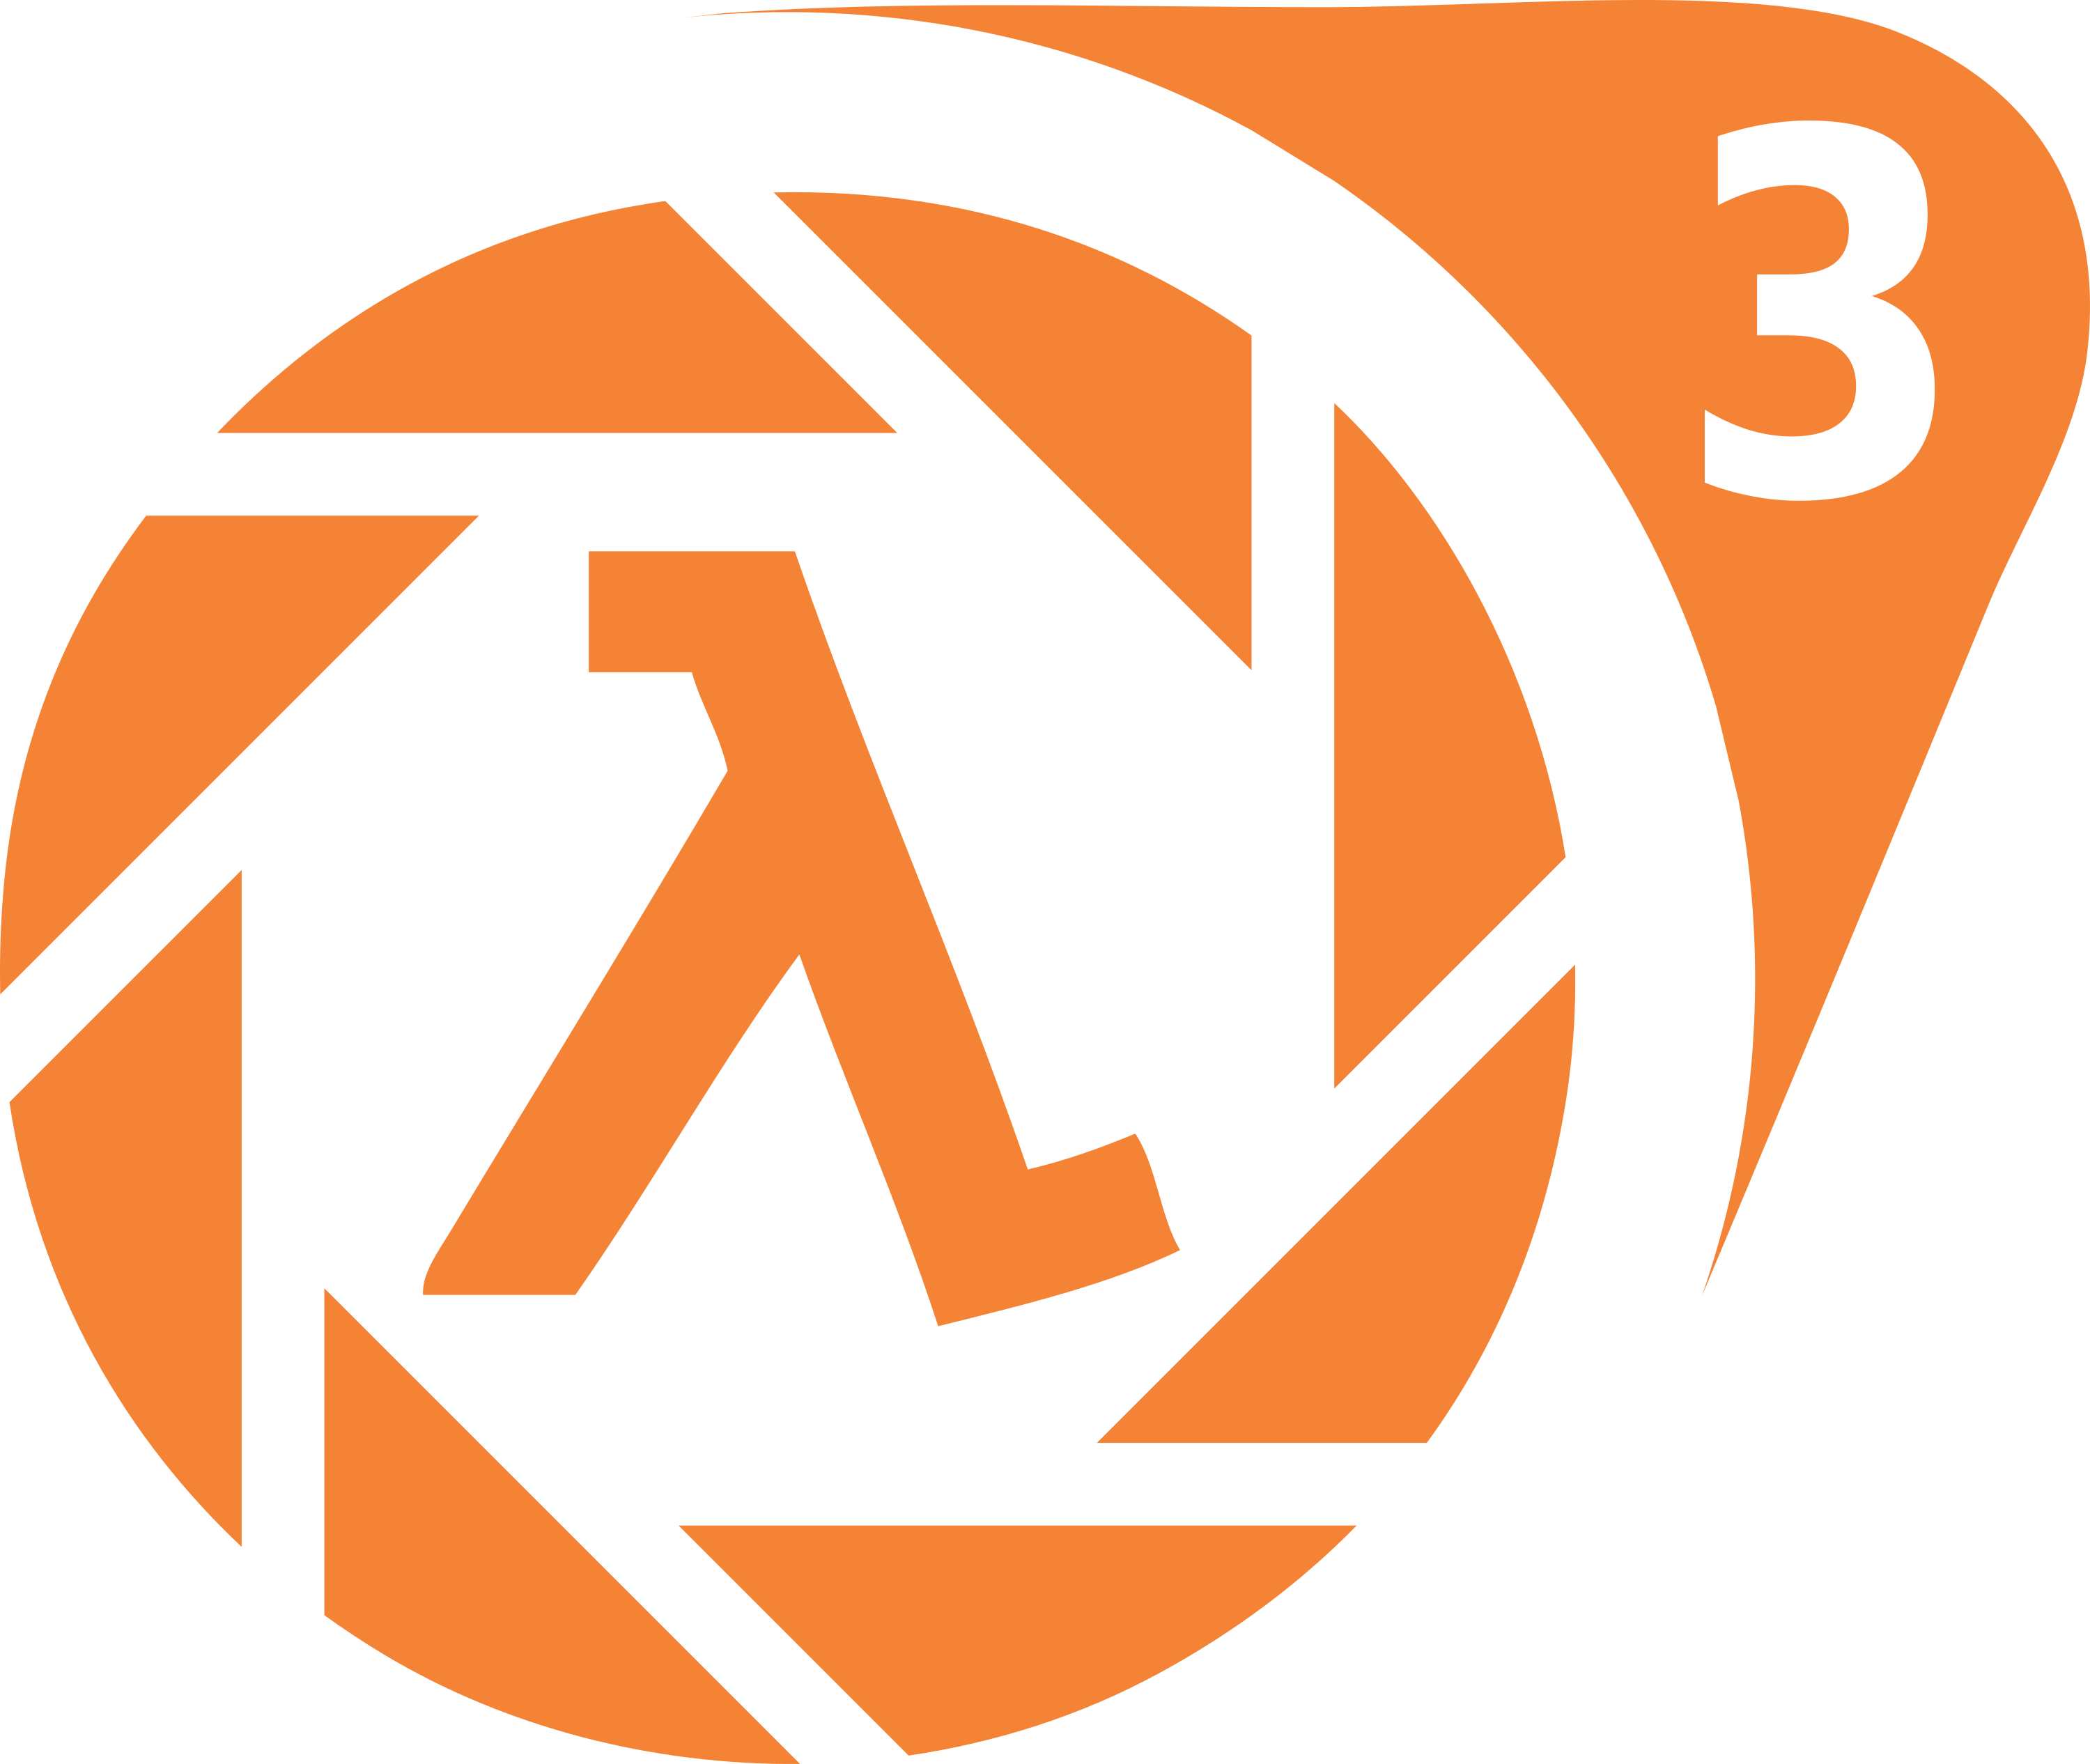 Half-Life 3 Logo Concept by w3llw3llw3ll on DeviantArt